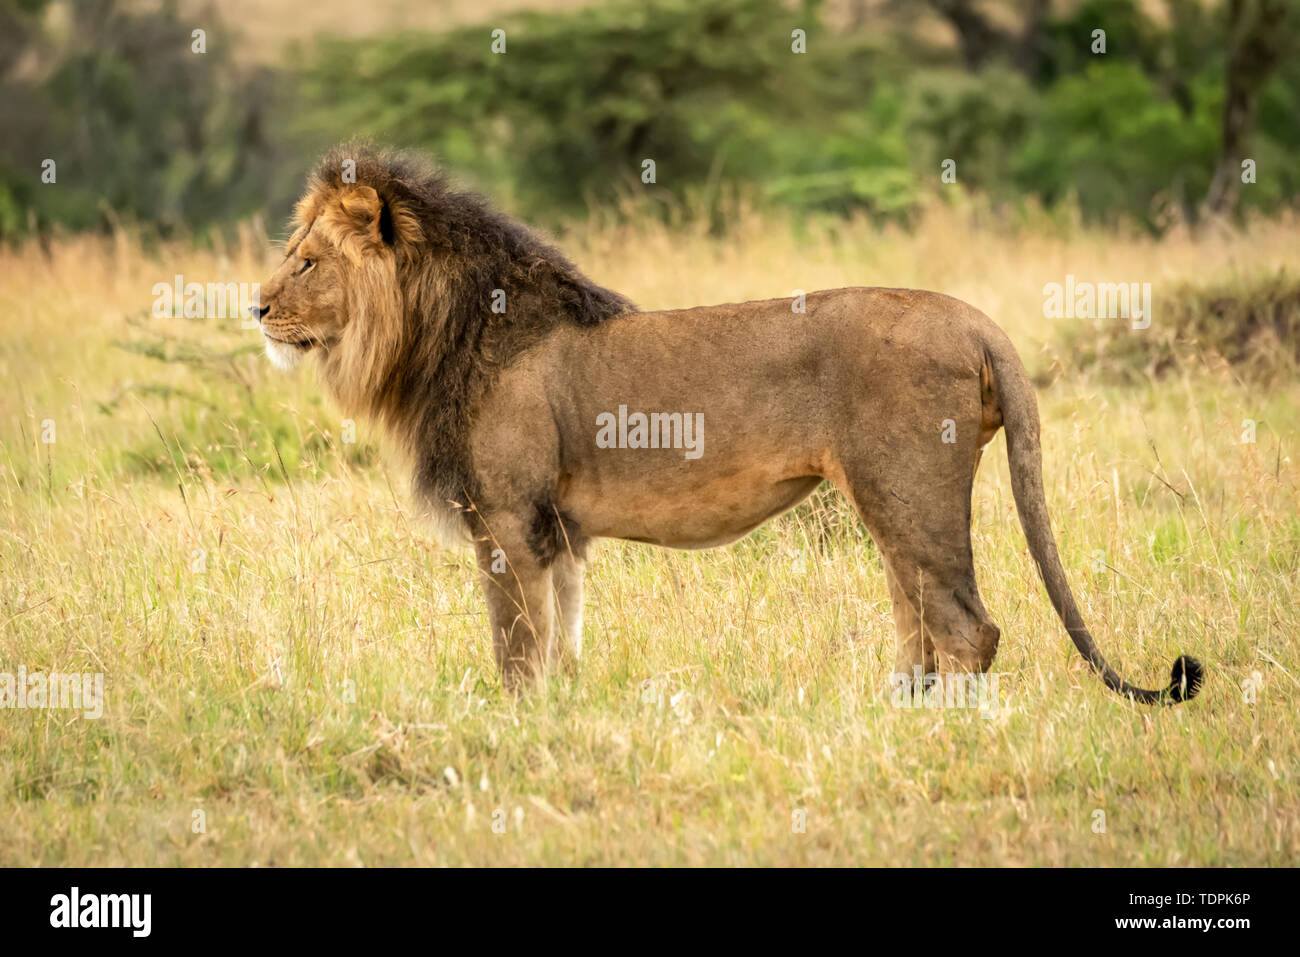 Male lion (Panthera leo) dans l'herbe en profil, le Parc National du Serengeti, Tanzanie Banque D'Images